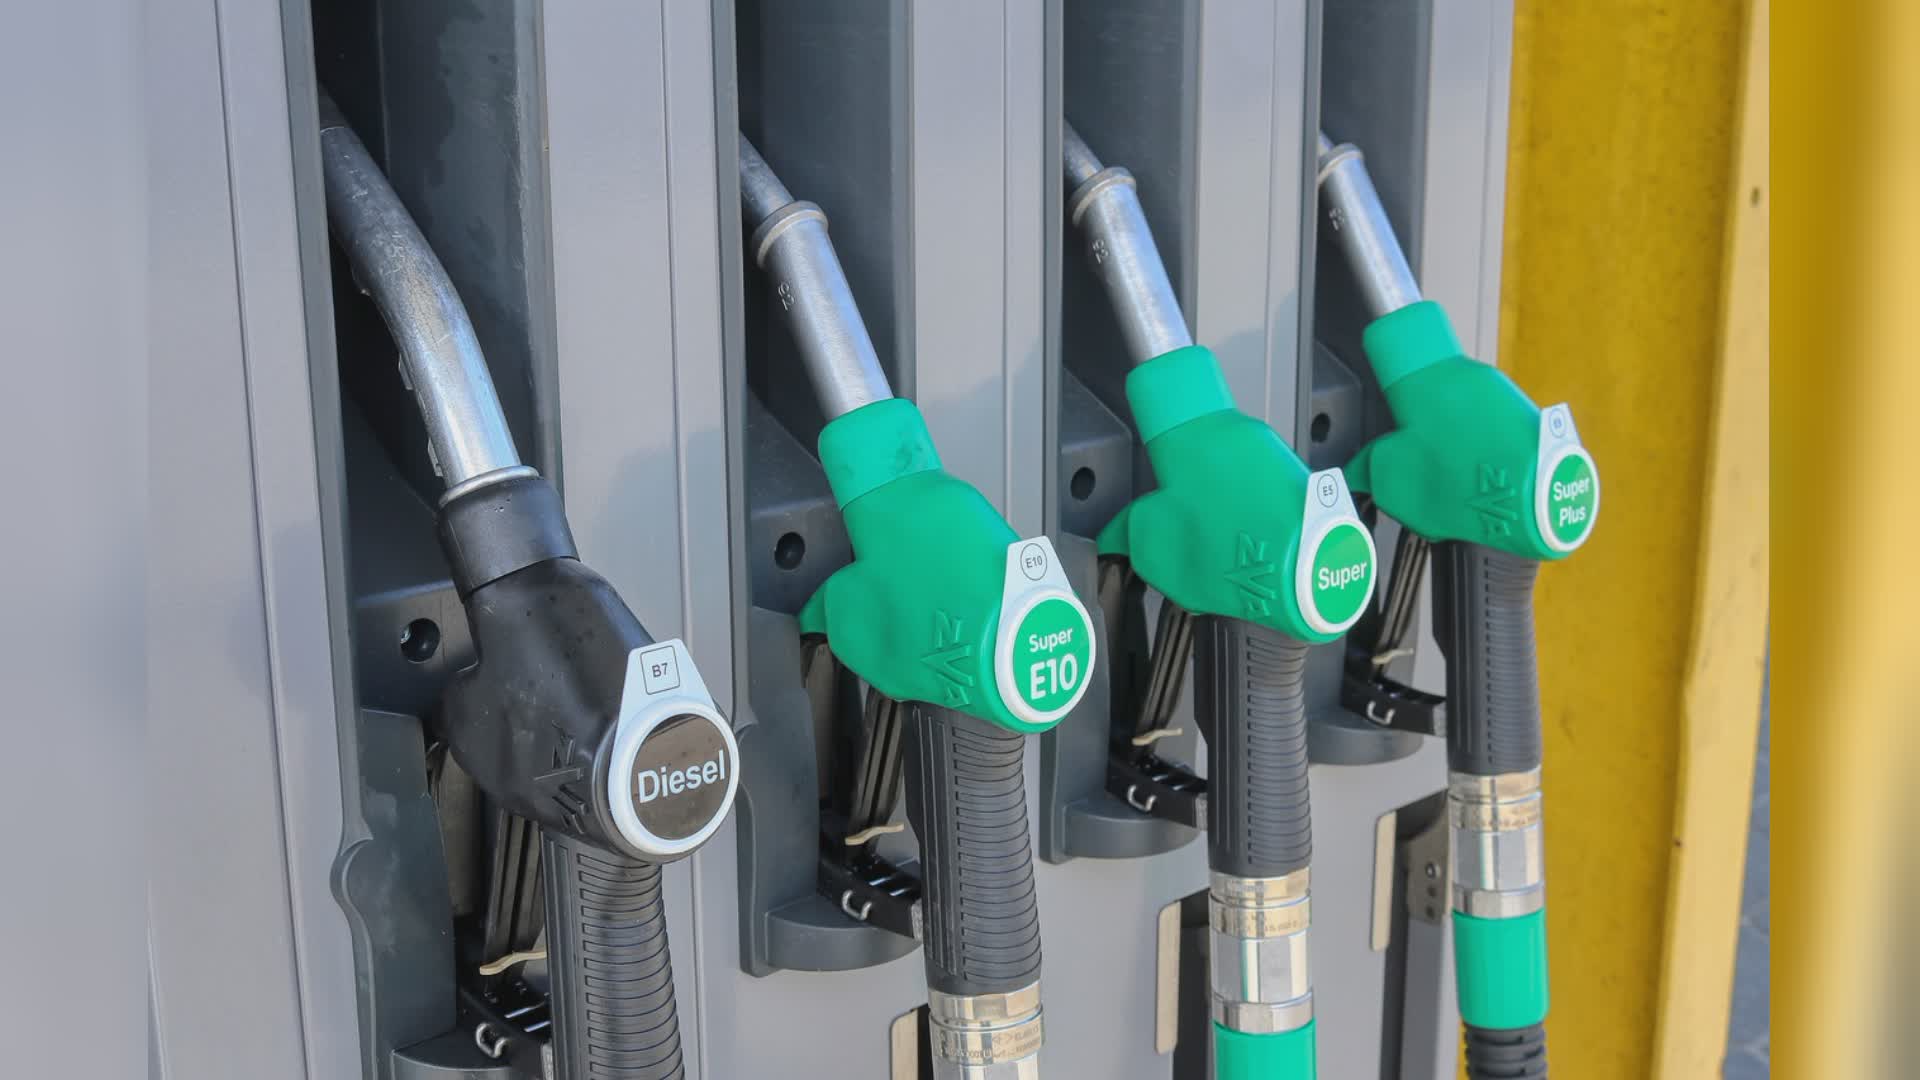 Carburanti, stop all'esposizione dei prezzi medi: il Tar del Lazio sconfessa il governo